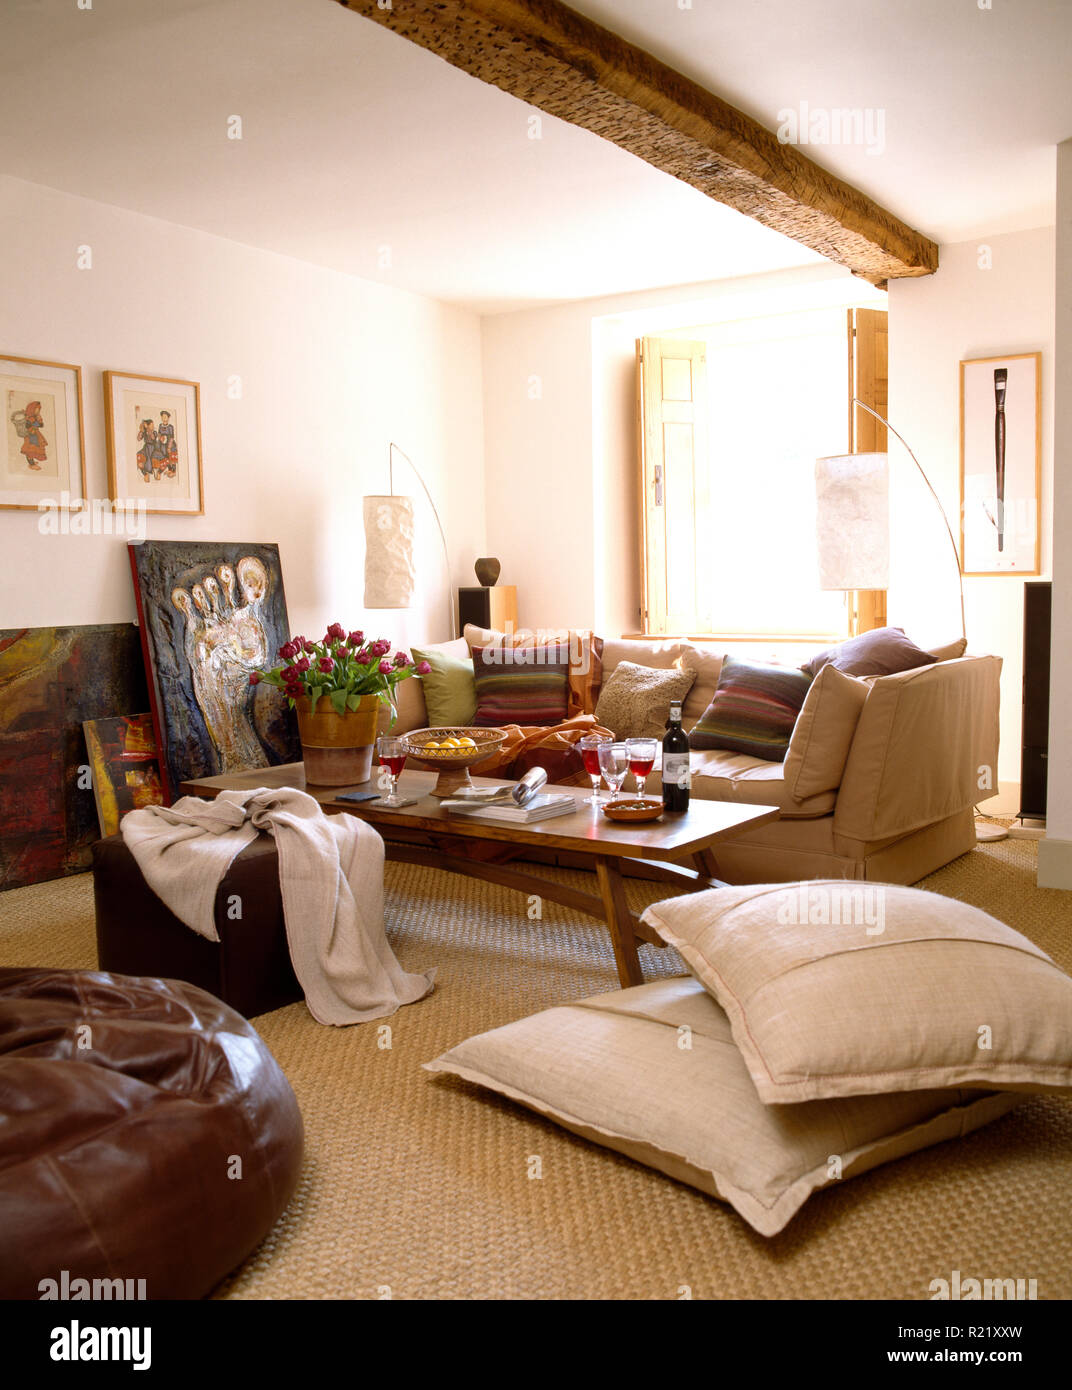 Crema de cojines y alfombras de piso en sala blanca Fotografía de stock -  Alamy